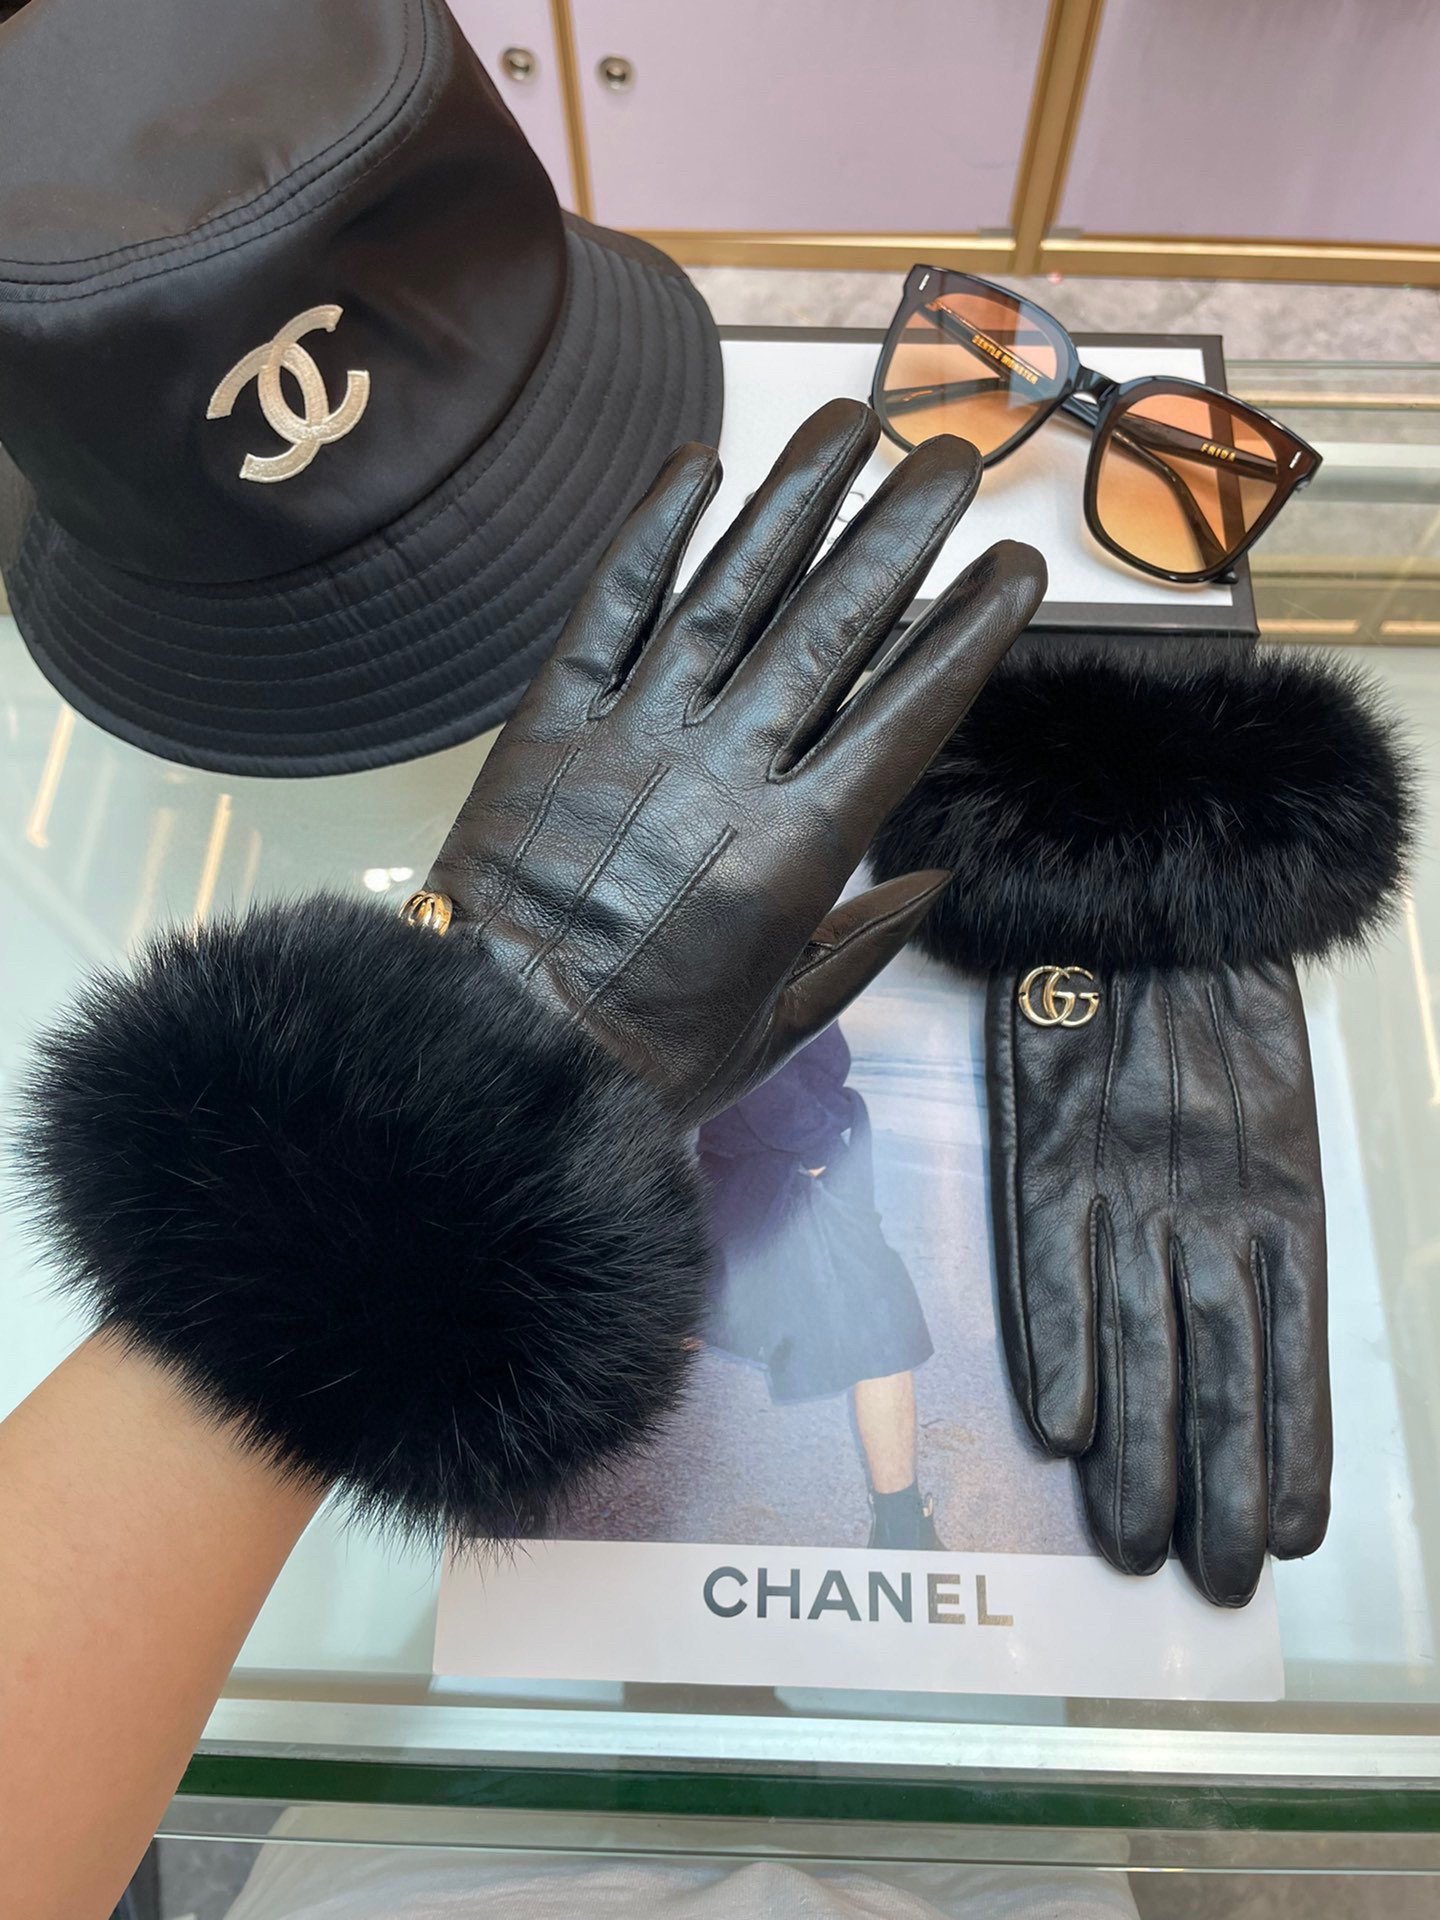 Gucci新款女士手套一级羊皮皮质超薄保暖舒适柔软舒适特显手型质感超群码数均码